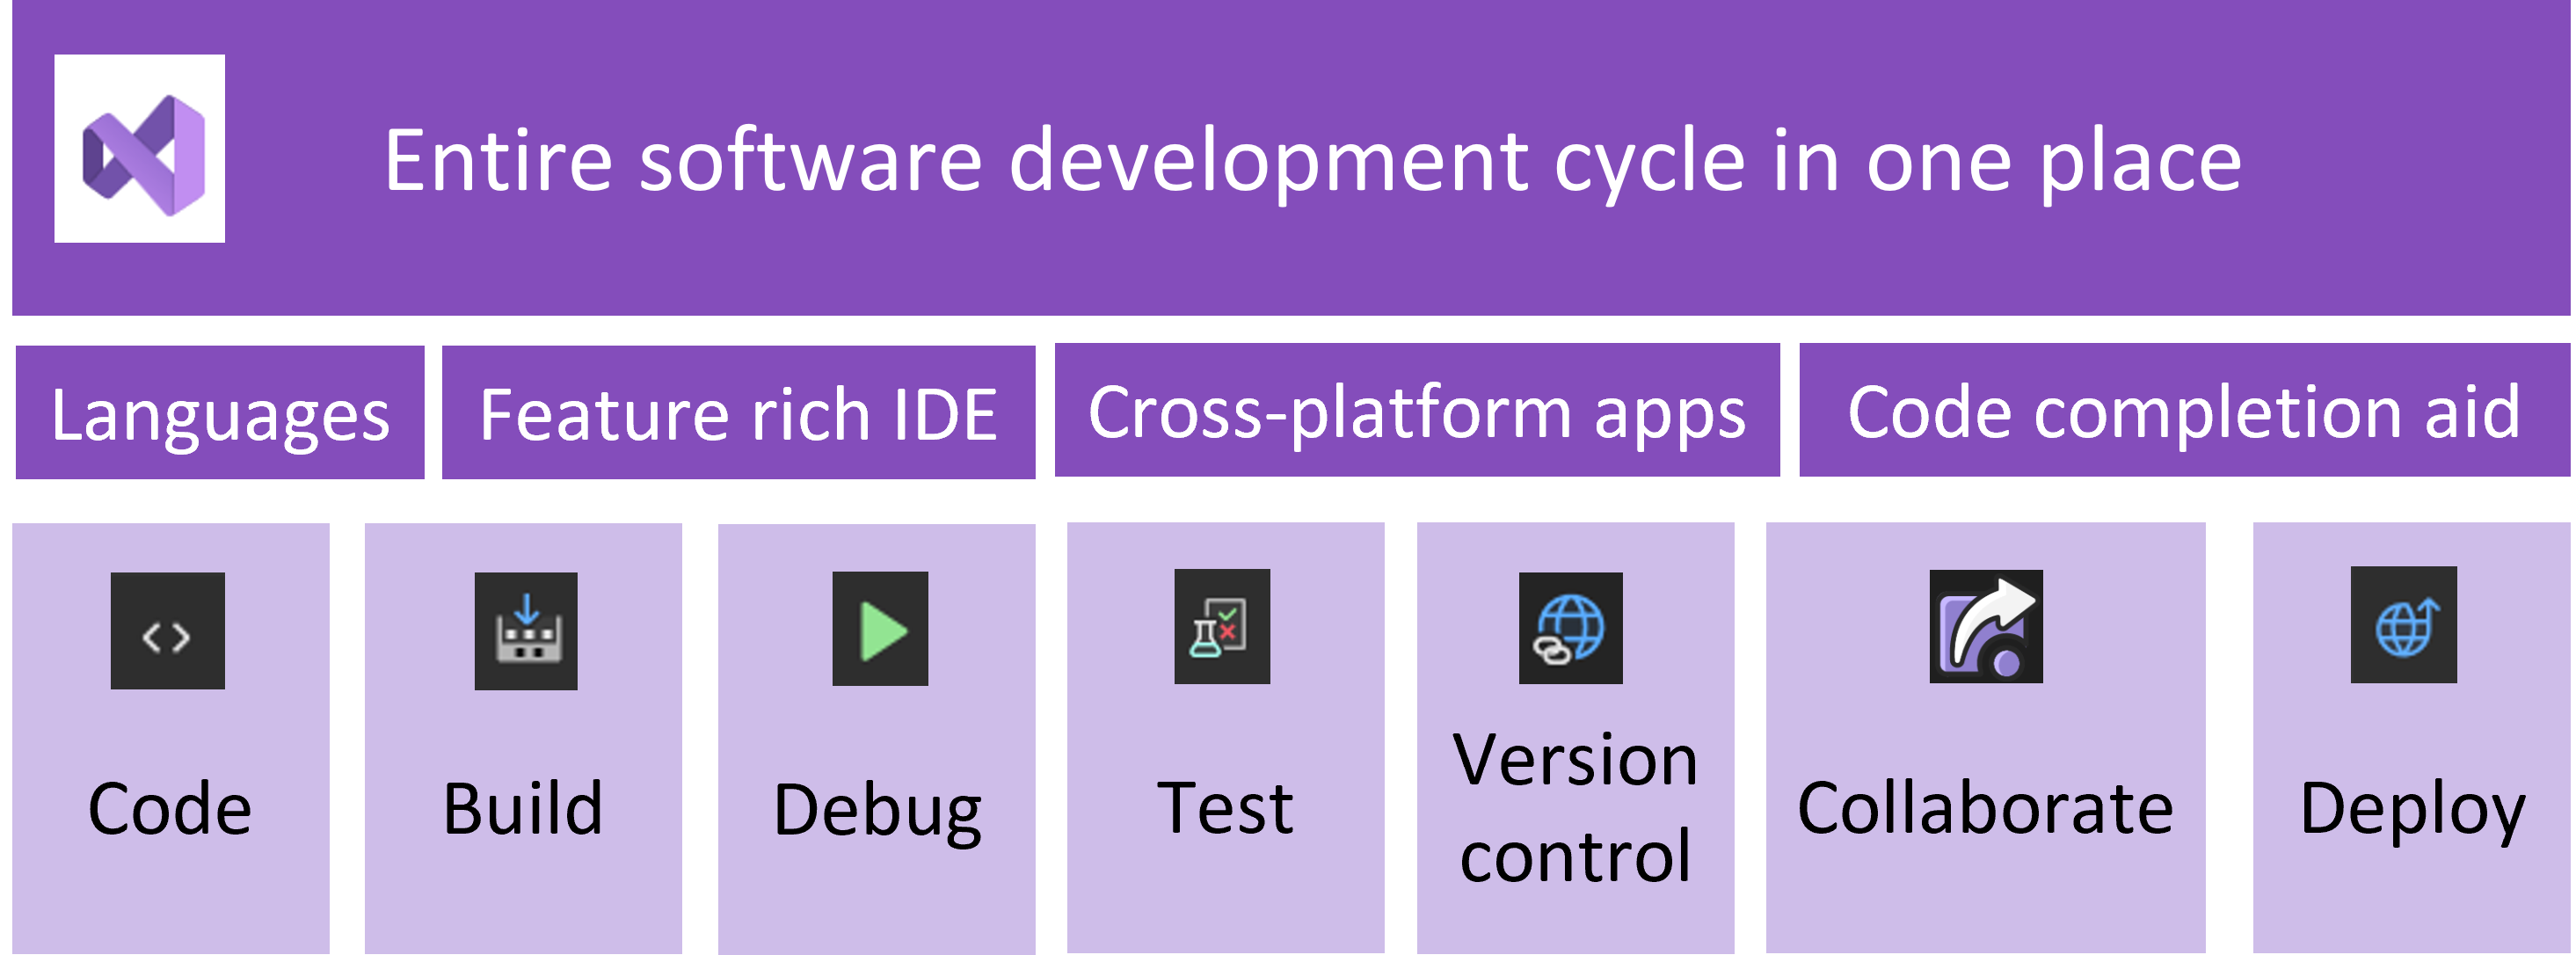 关系图显示了整个软件开发周期，整个过程的各个部分都可由 Visual Studio 处理。